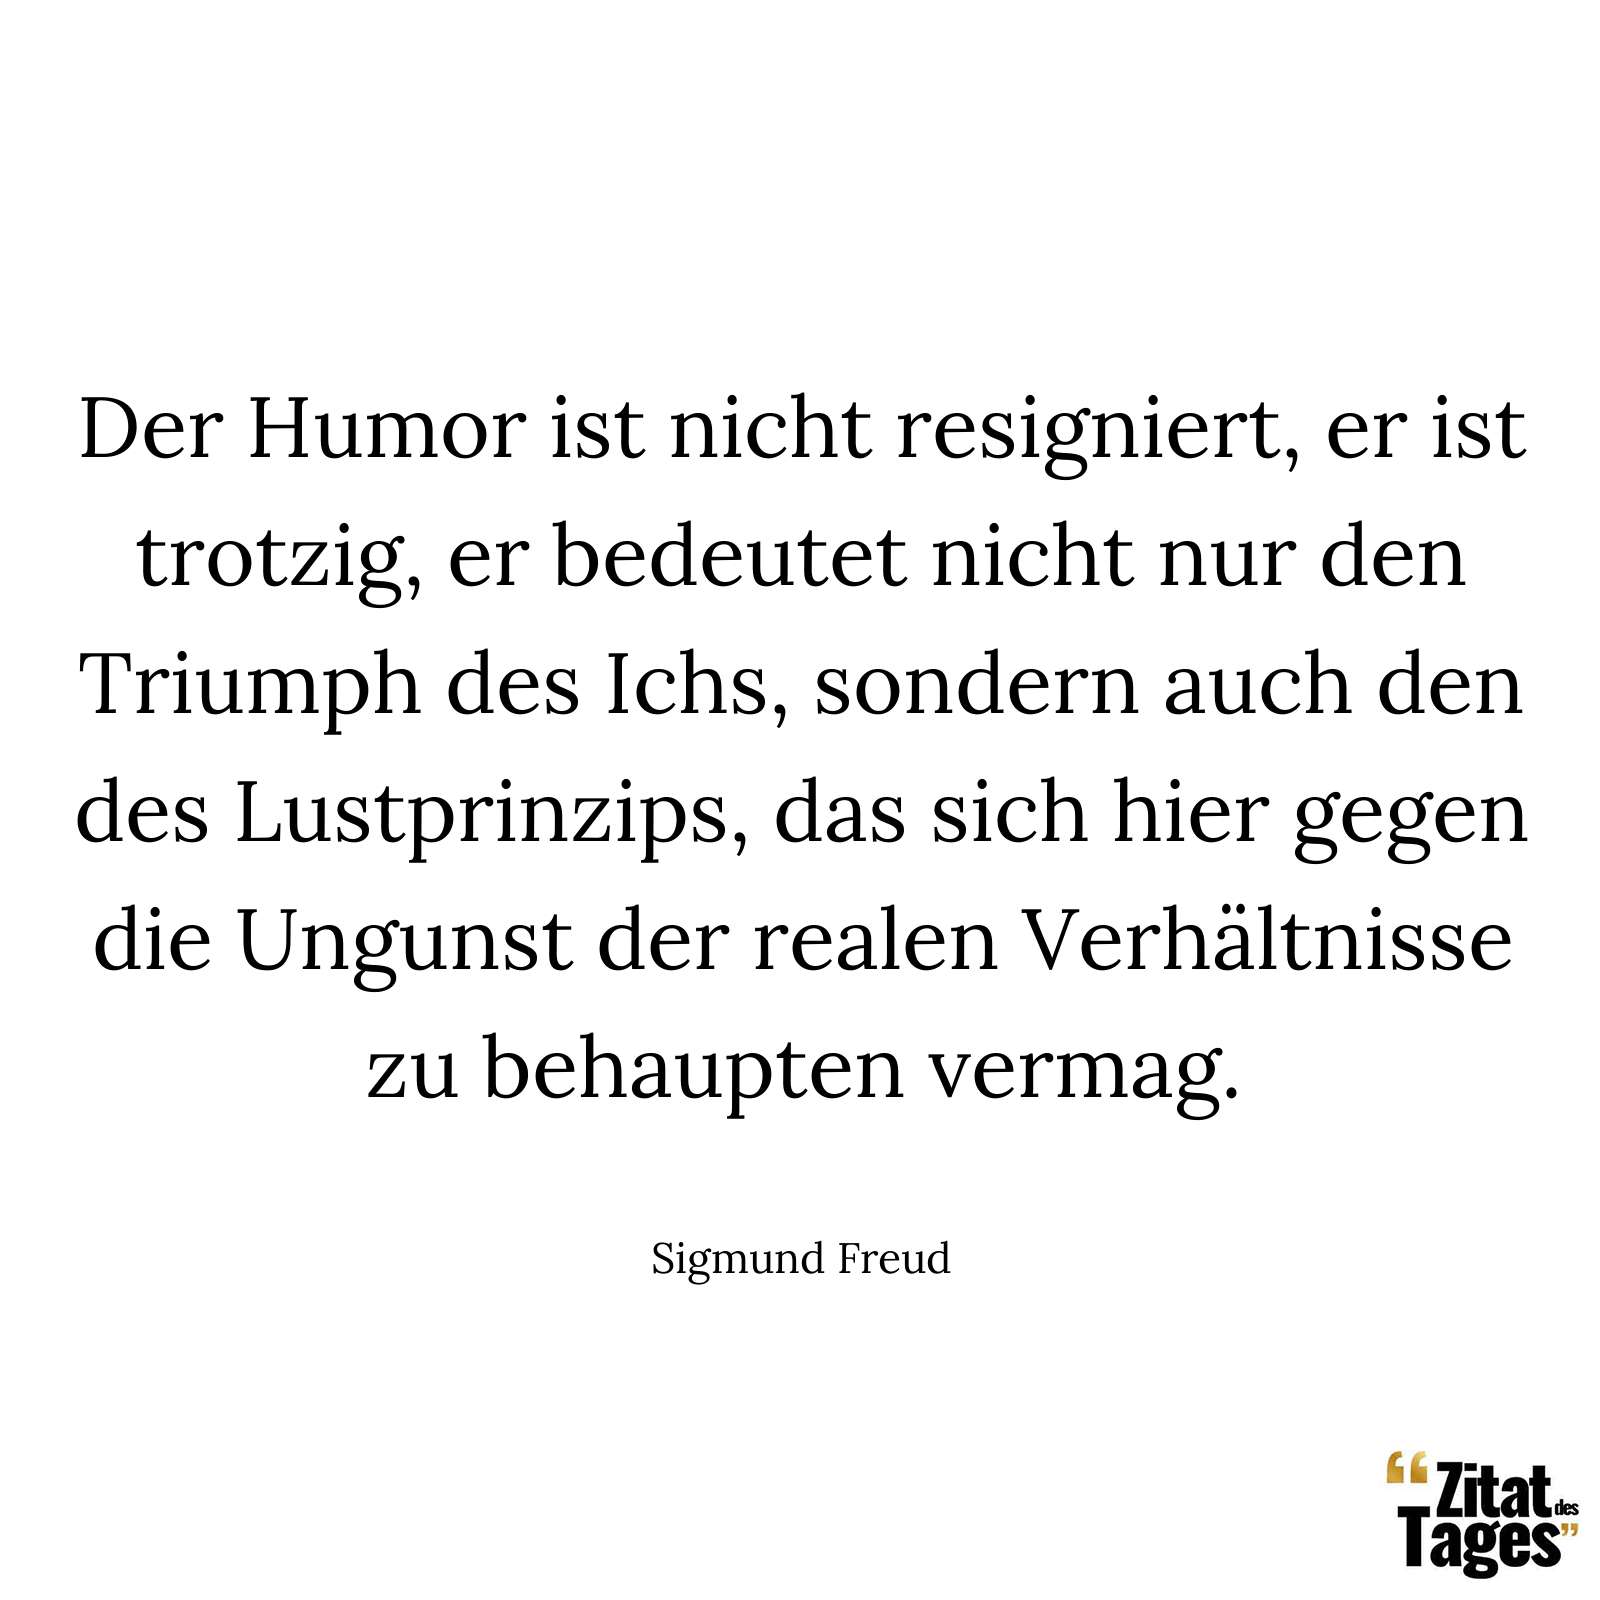 Der Humor ist nicht resigniert, er ist trotzig, er bedeutet nicht nur den Triumph des Ichs, sondern auch den des Lustprinzips, das sich hier gegen die Ungunst der realen Verhältnisse zu behaupten vermag. - Sigmund Freud